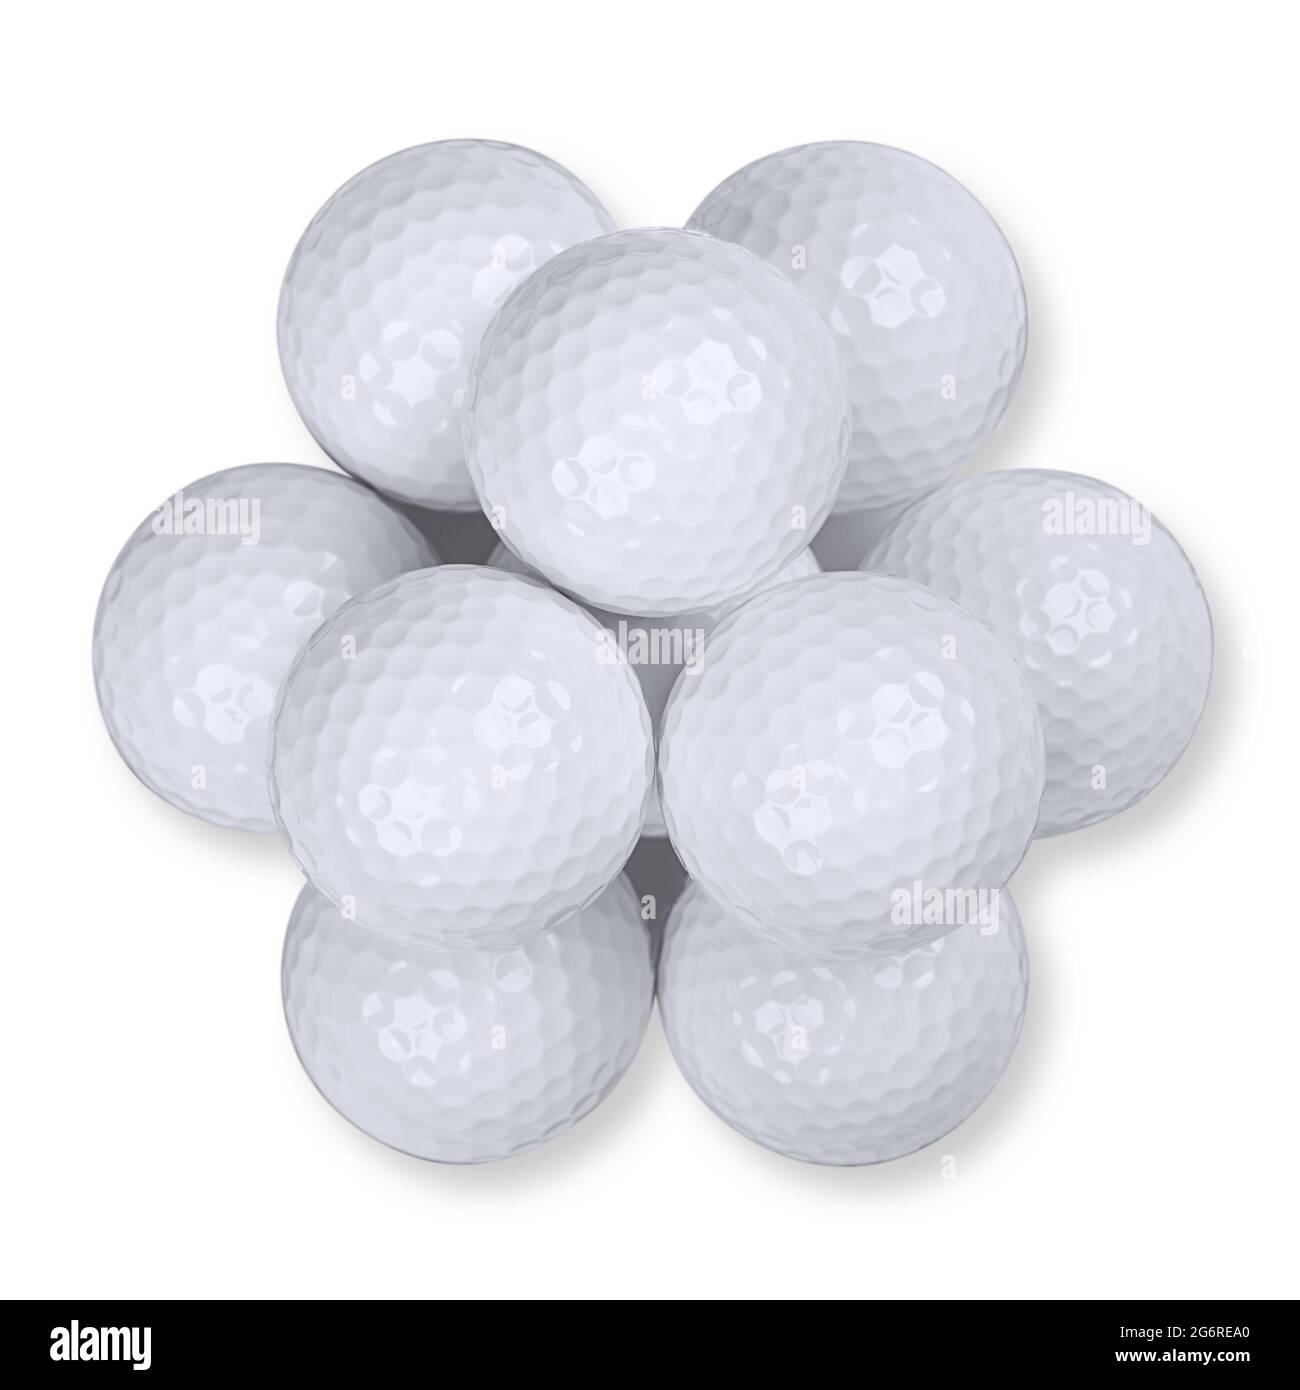 Palline da golf impilate a forma di piramide, dall'alto, su sfondo bianco. Una pila di dieci palle da golf americane bianche con tacche speciali. Foto Stock